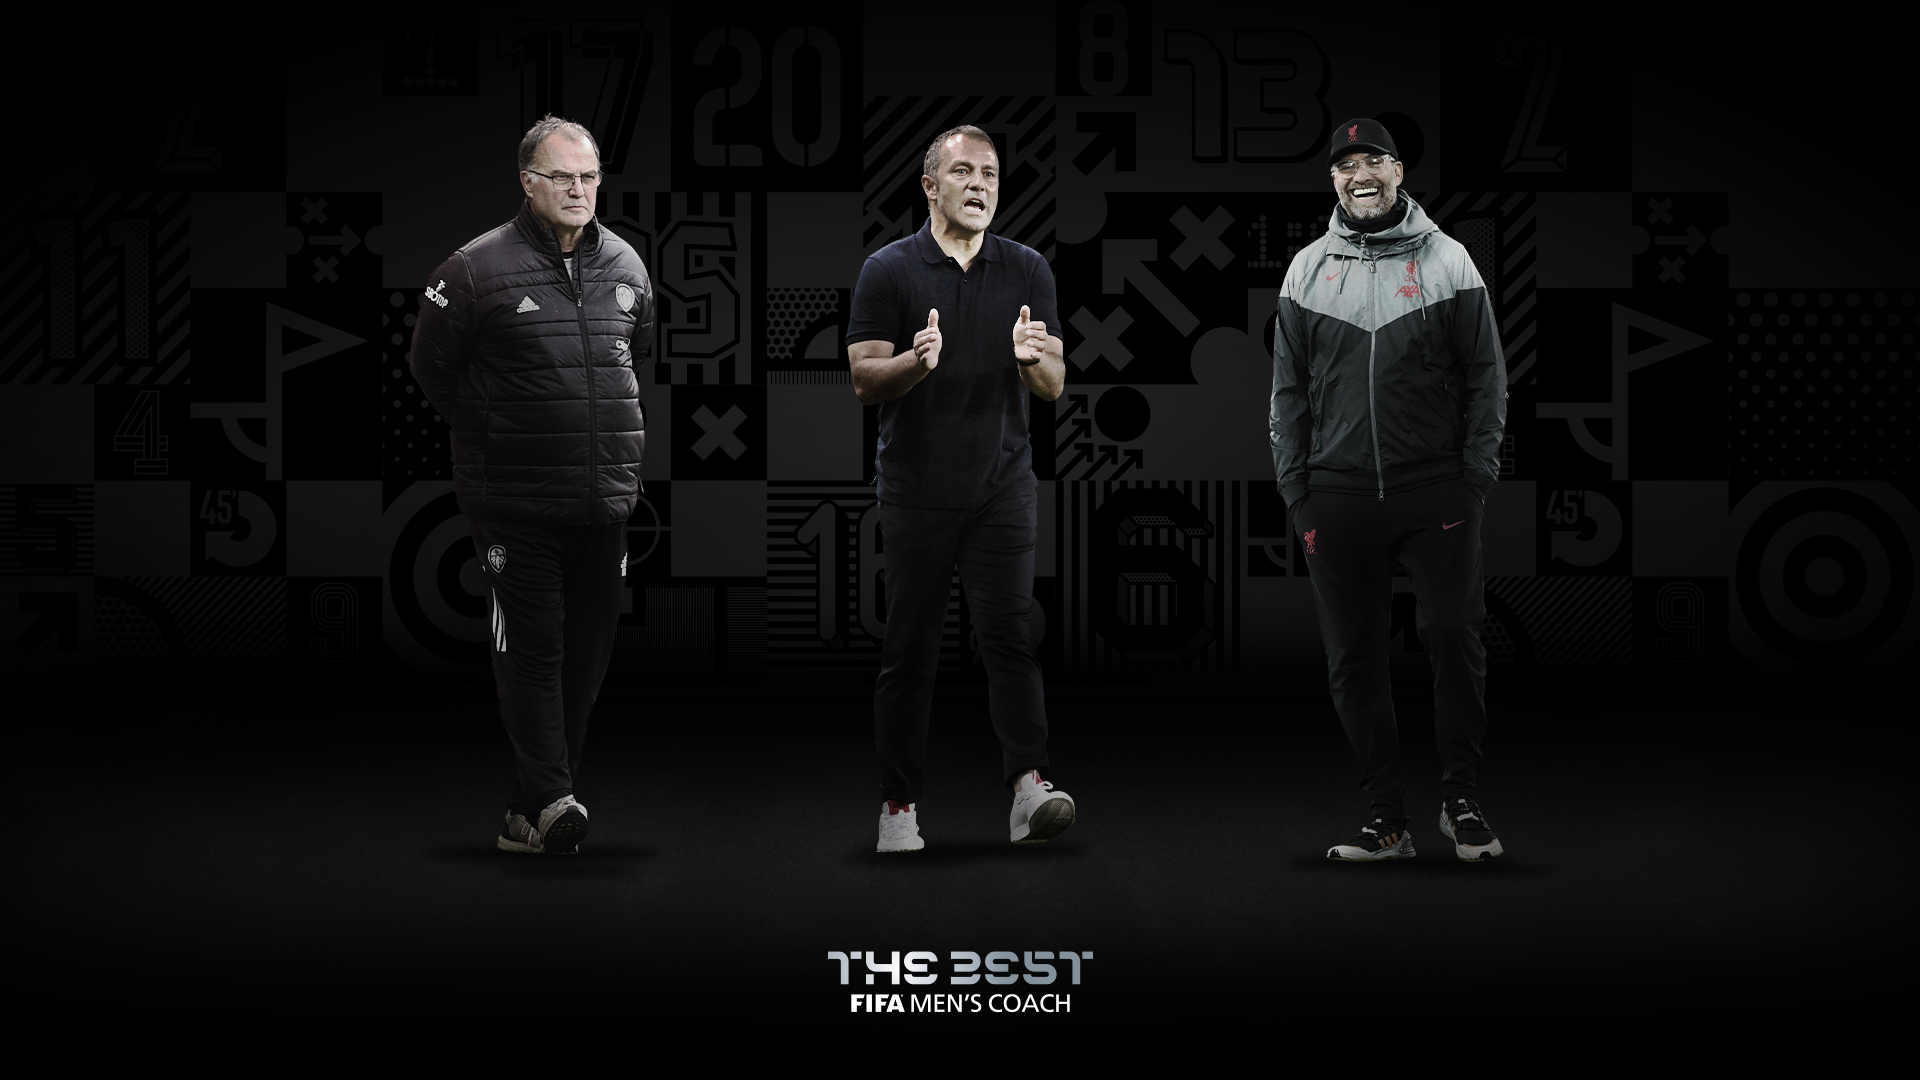 Pelatih Terbaik FIFA 2020: Hansi Flick Ditantang Klopp dan Bielsa